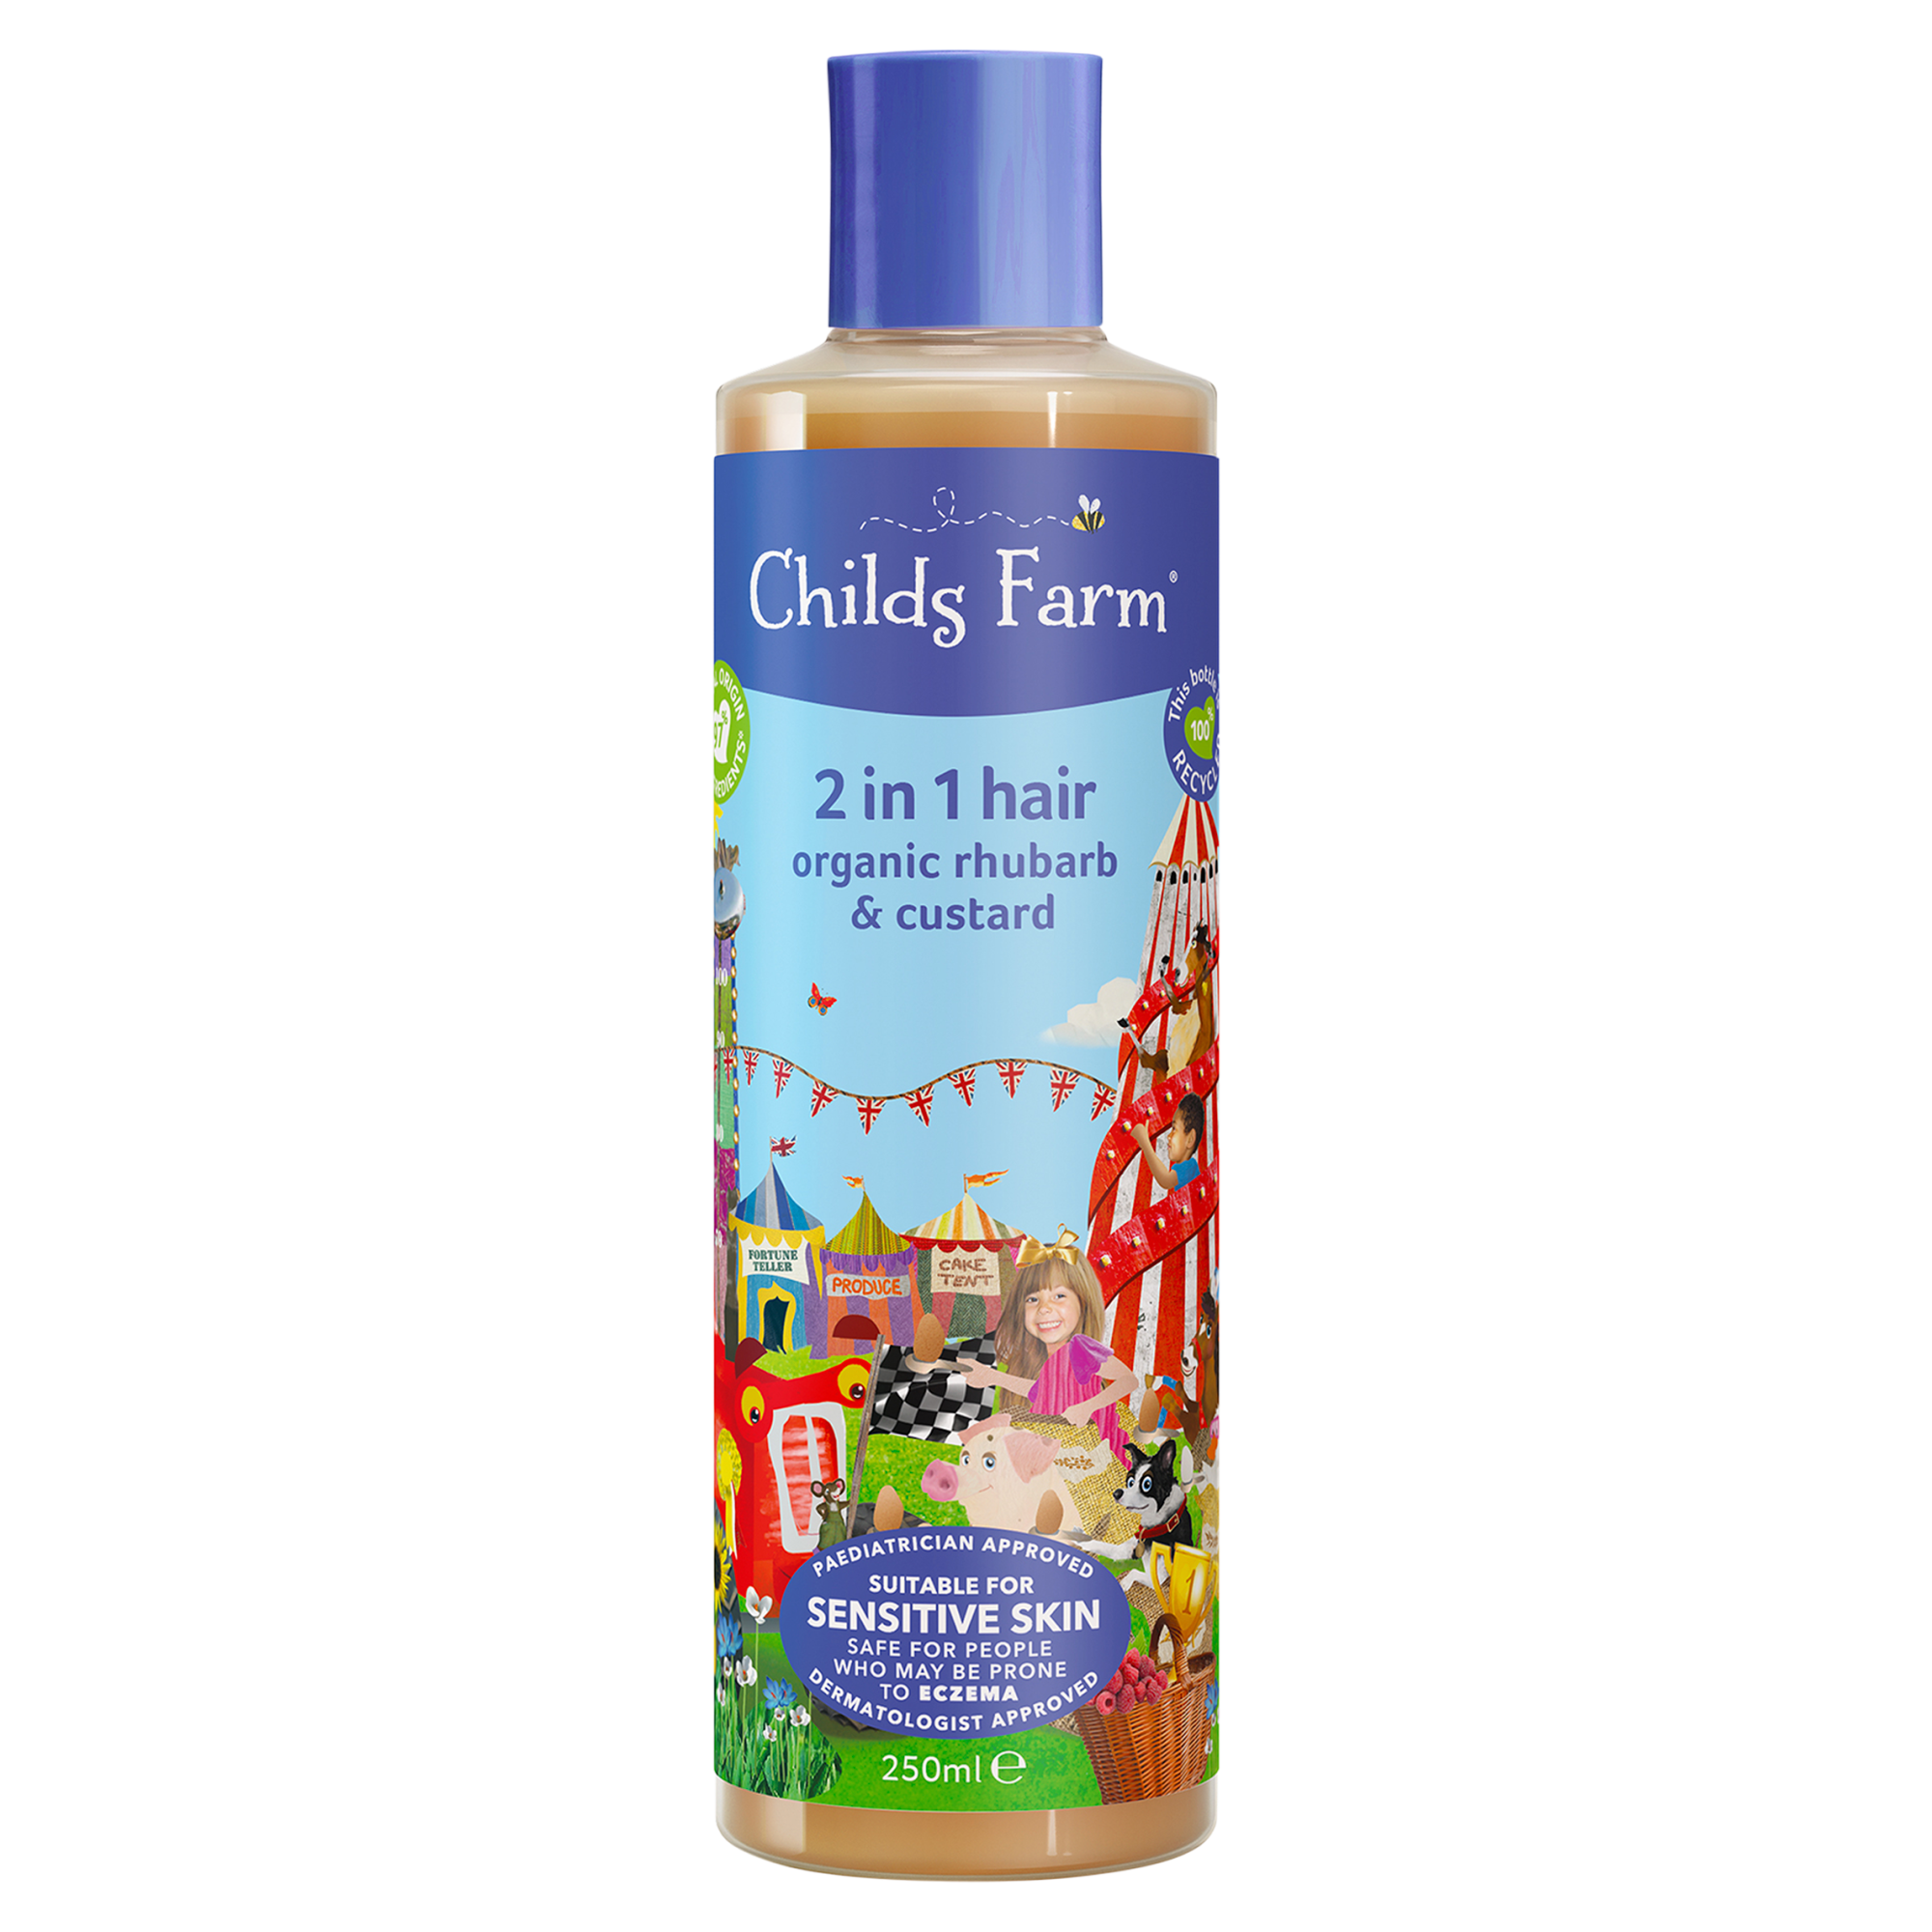 Childs Farm 2 In 1 Shampoo & Conditioner Organic Rhubarb & Custard 250ml